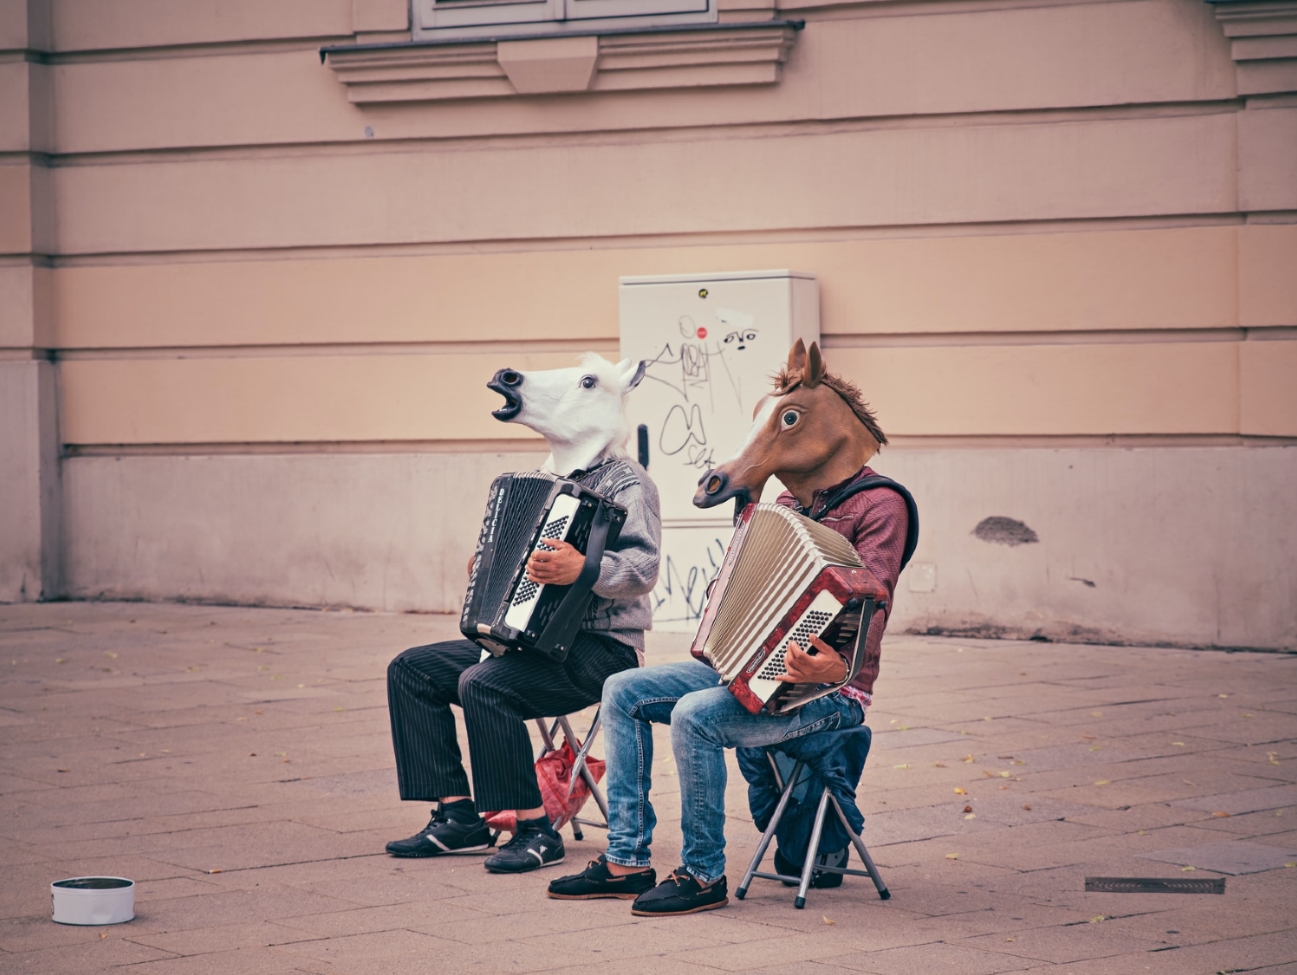 Zwei Akkordeospieler auf der Straße mit Pferdekopfmaske.